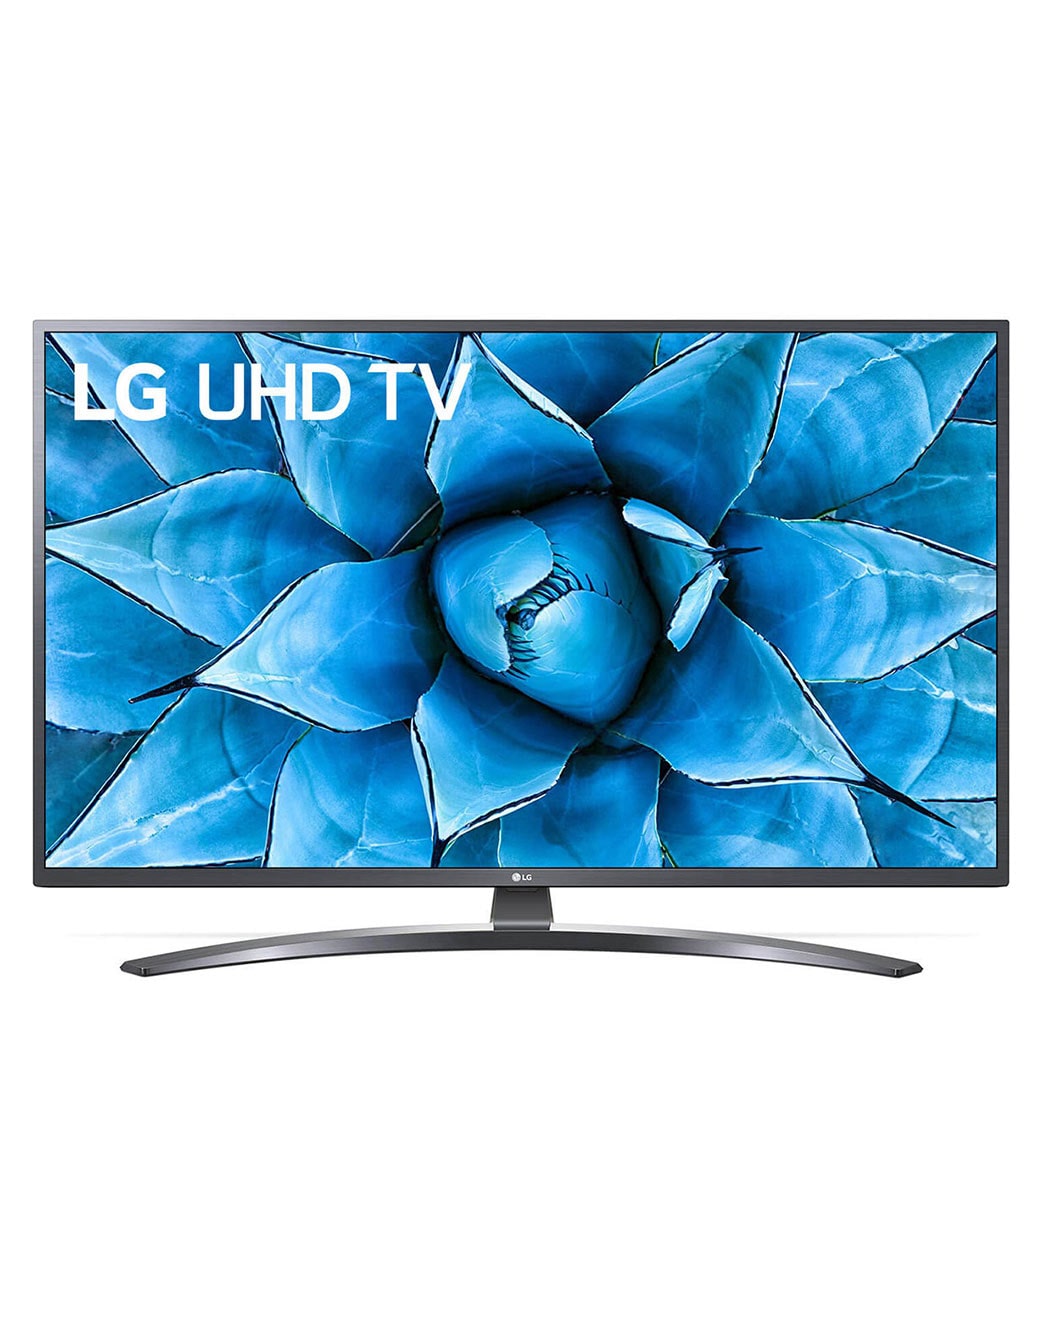 Imposible tienda de comestibles chico Smart LG TV UHD 4K 65 pulgadas UN74